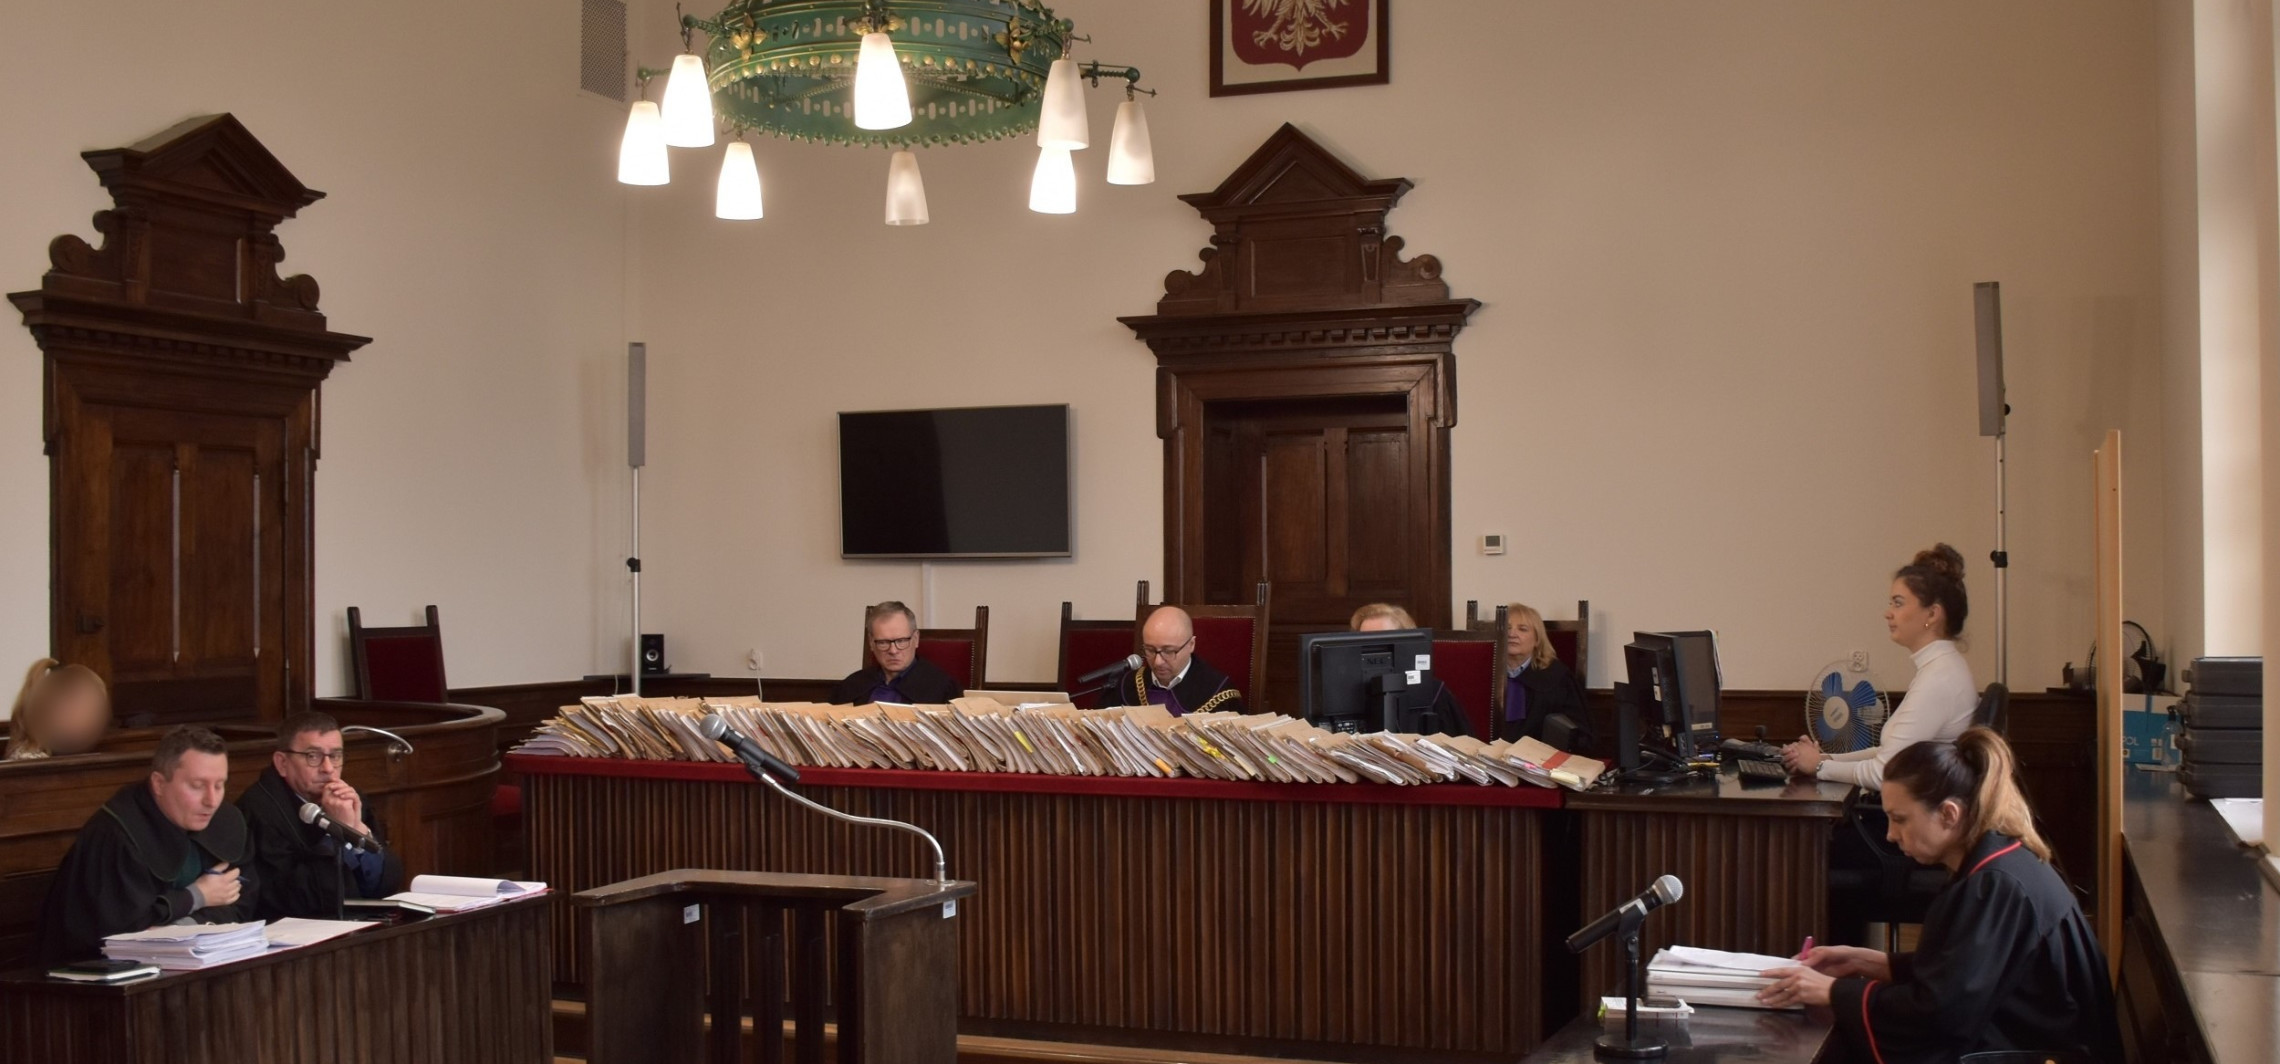 Inowrocław - Afera fakturowa: Obrona chce wyłączenia sędziego 